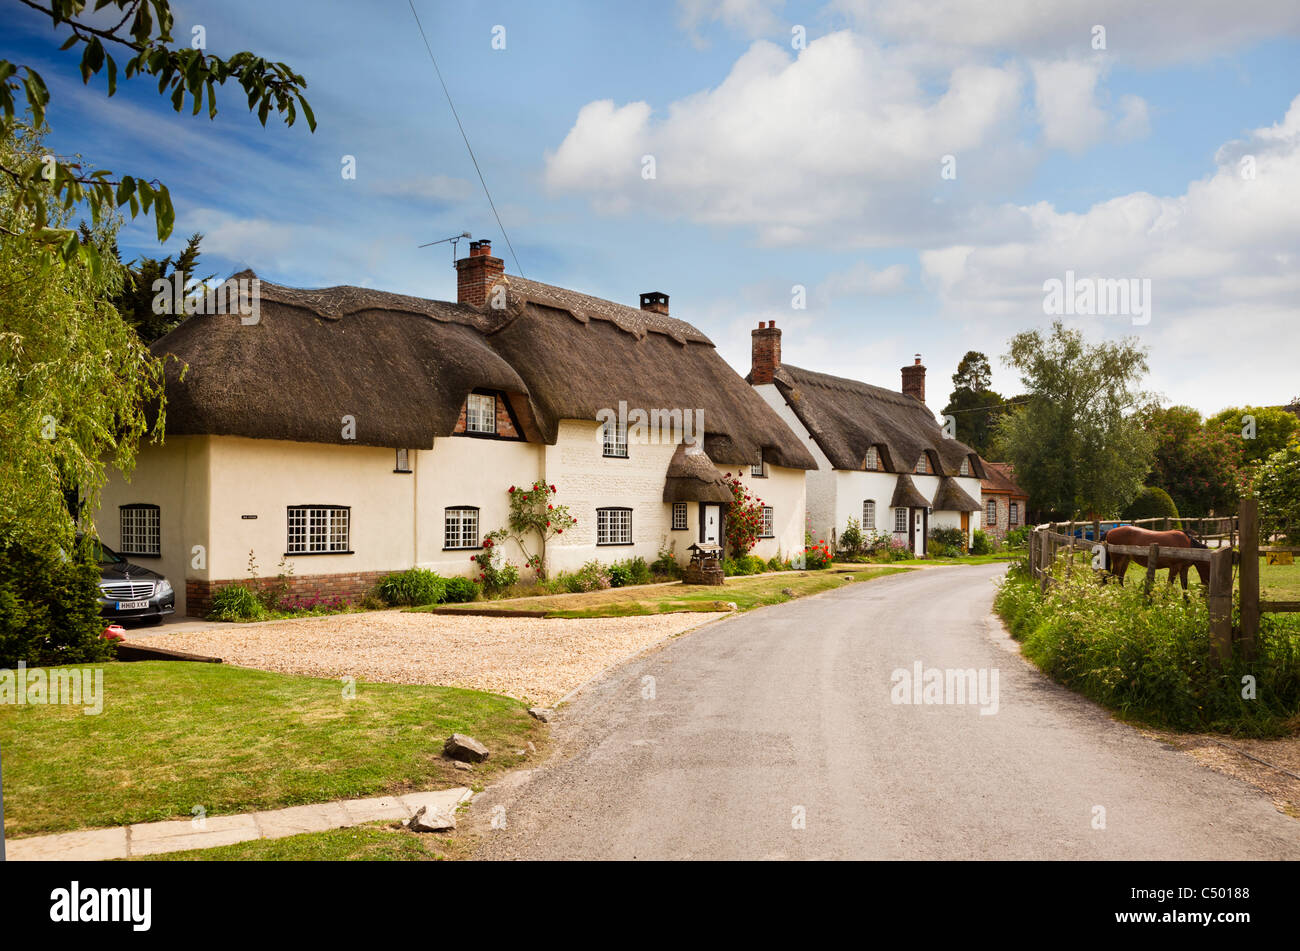 Tarrant Monkton village, Dorset, England, Regno Unito - vecchio cottage con il tetto di paglia Foto Stock